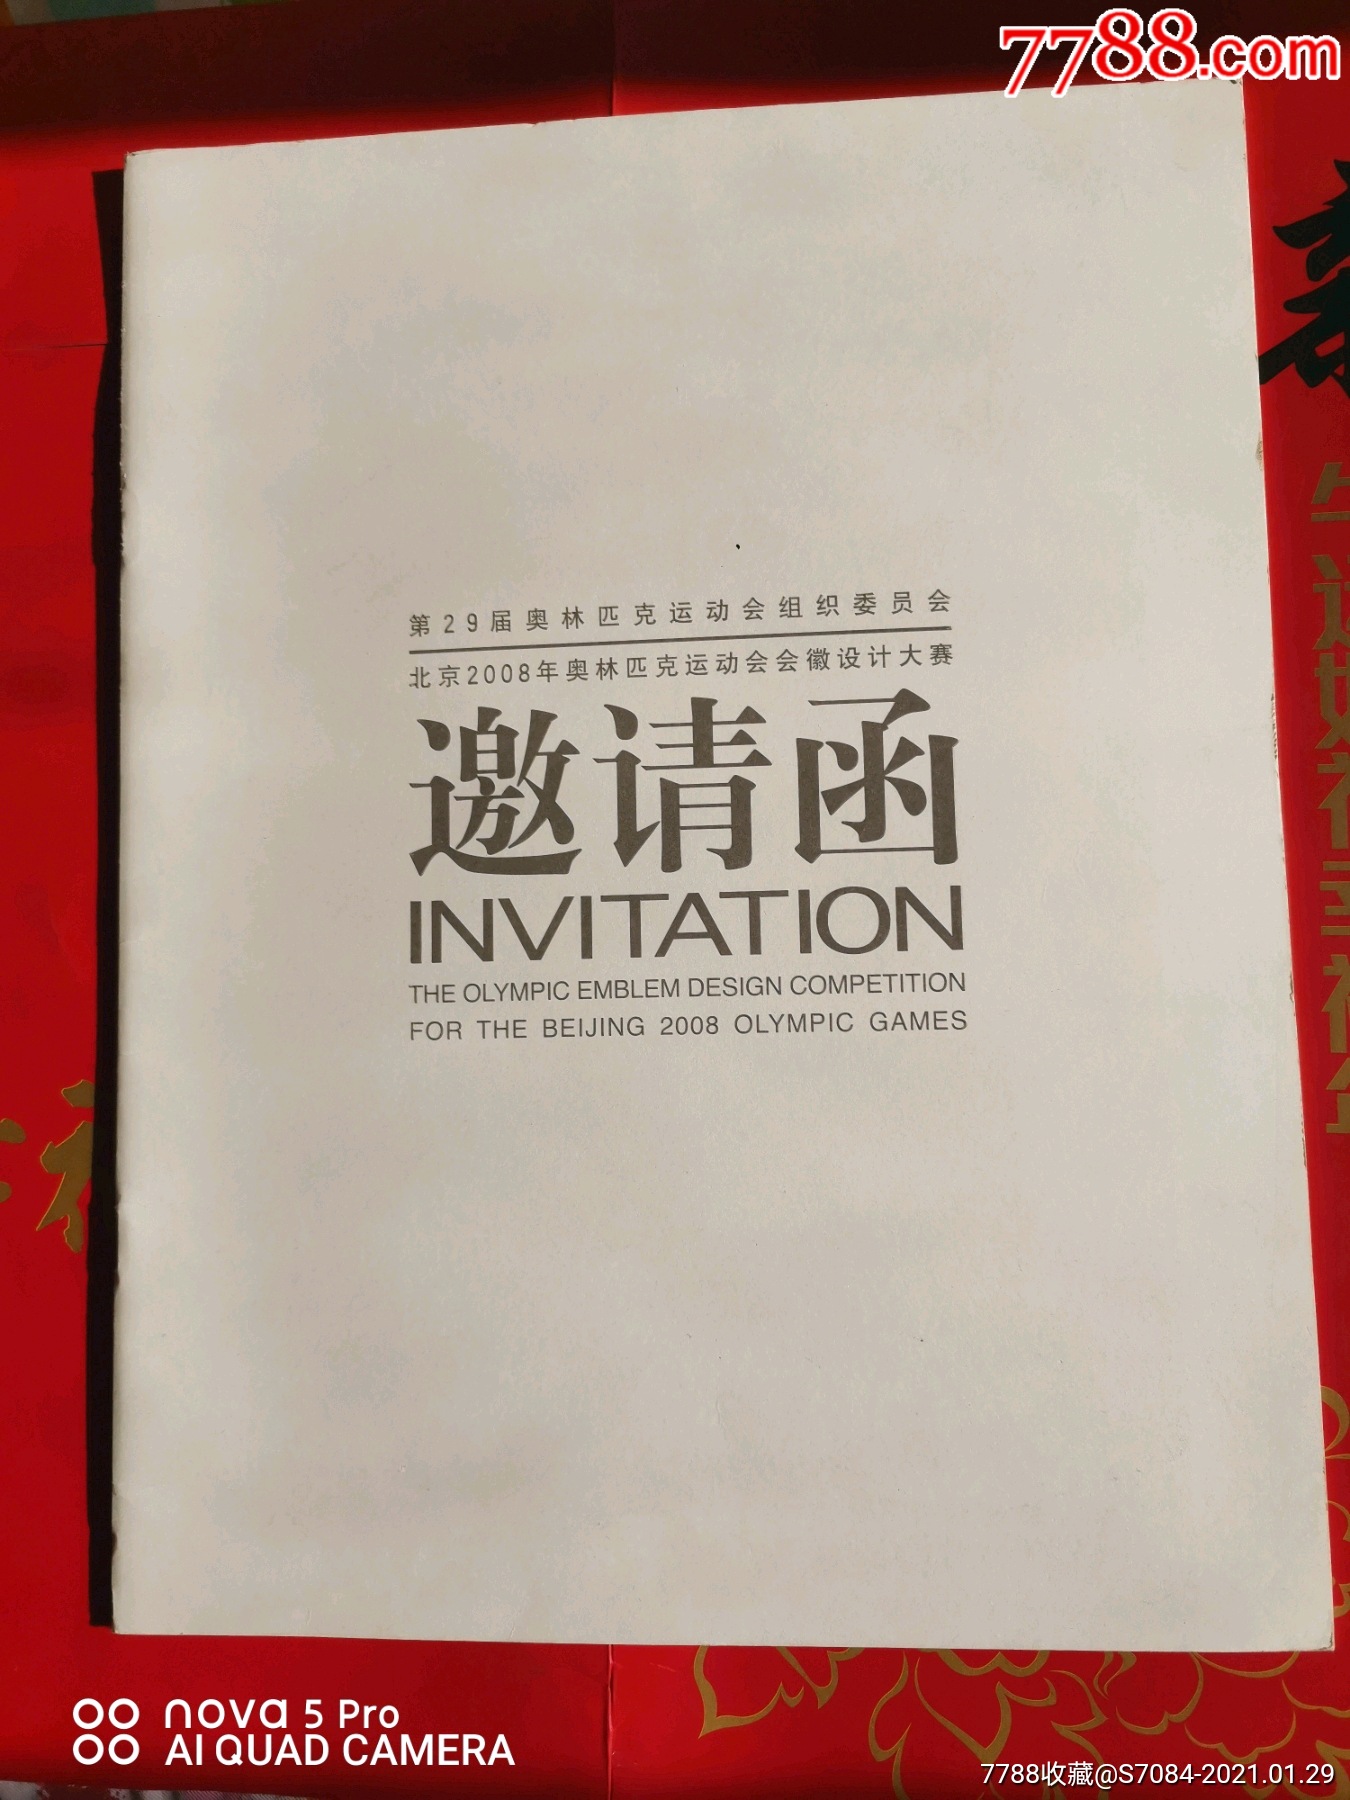 邀请函--北京2008年奥林匹克运动会会徽设计大赛邀请函(空白,中英文)